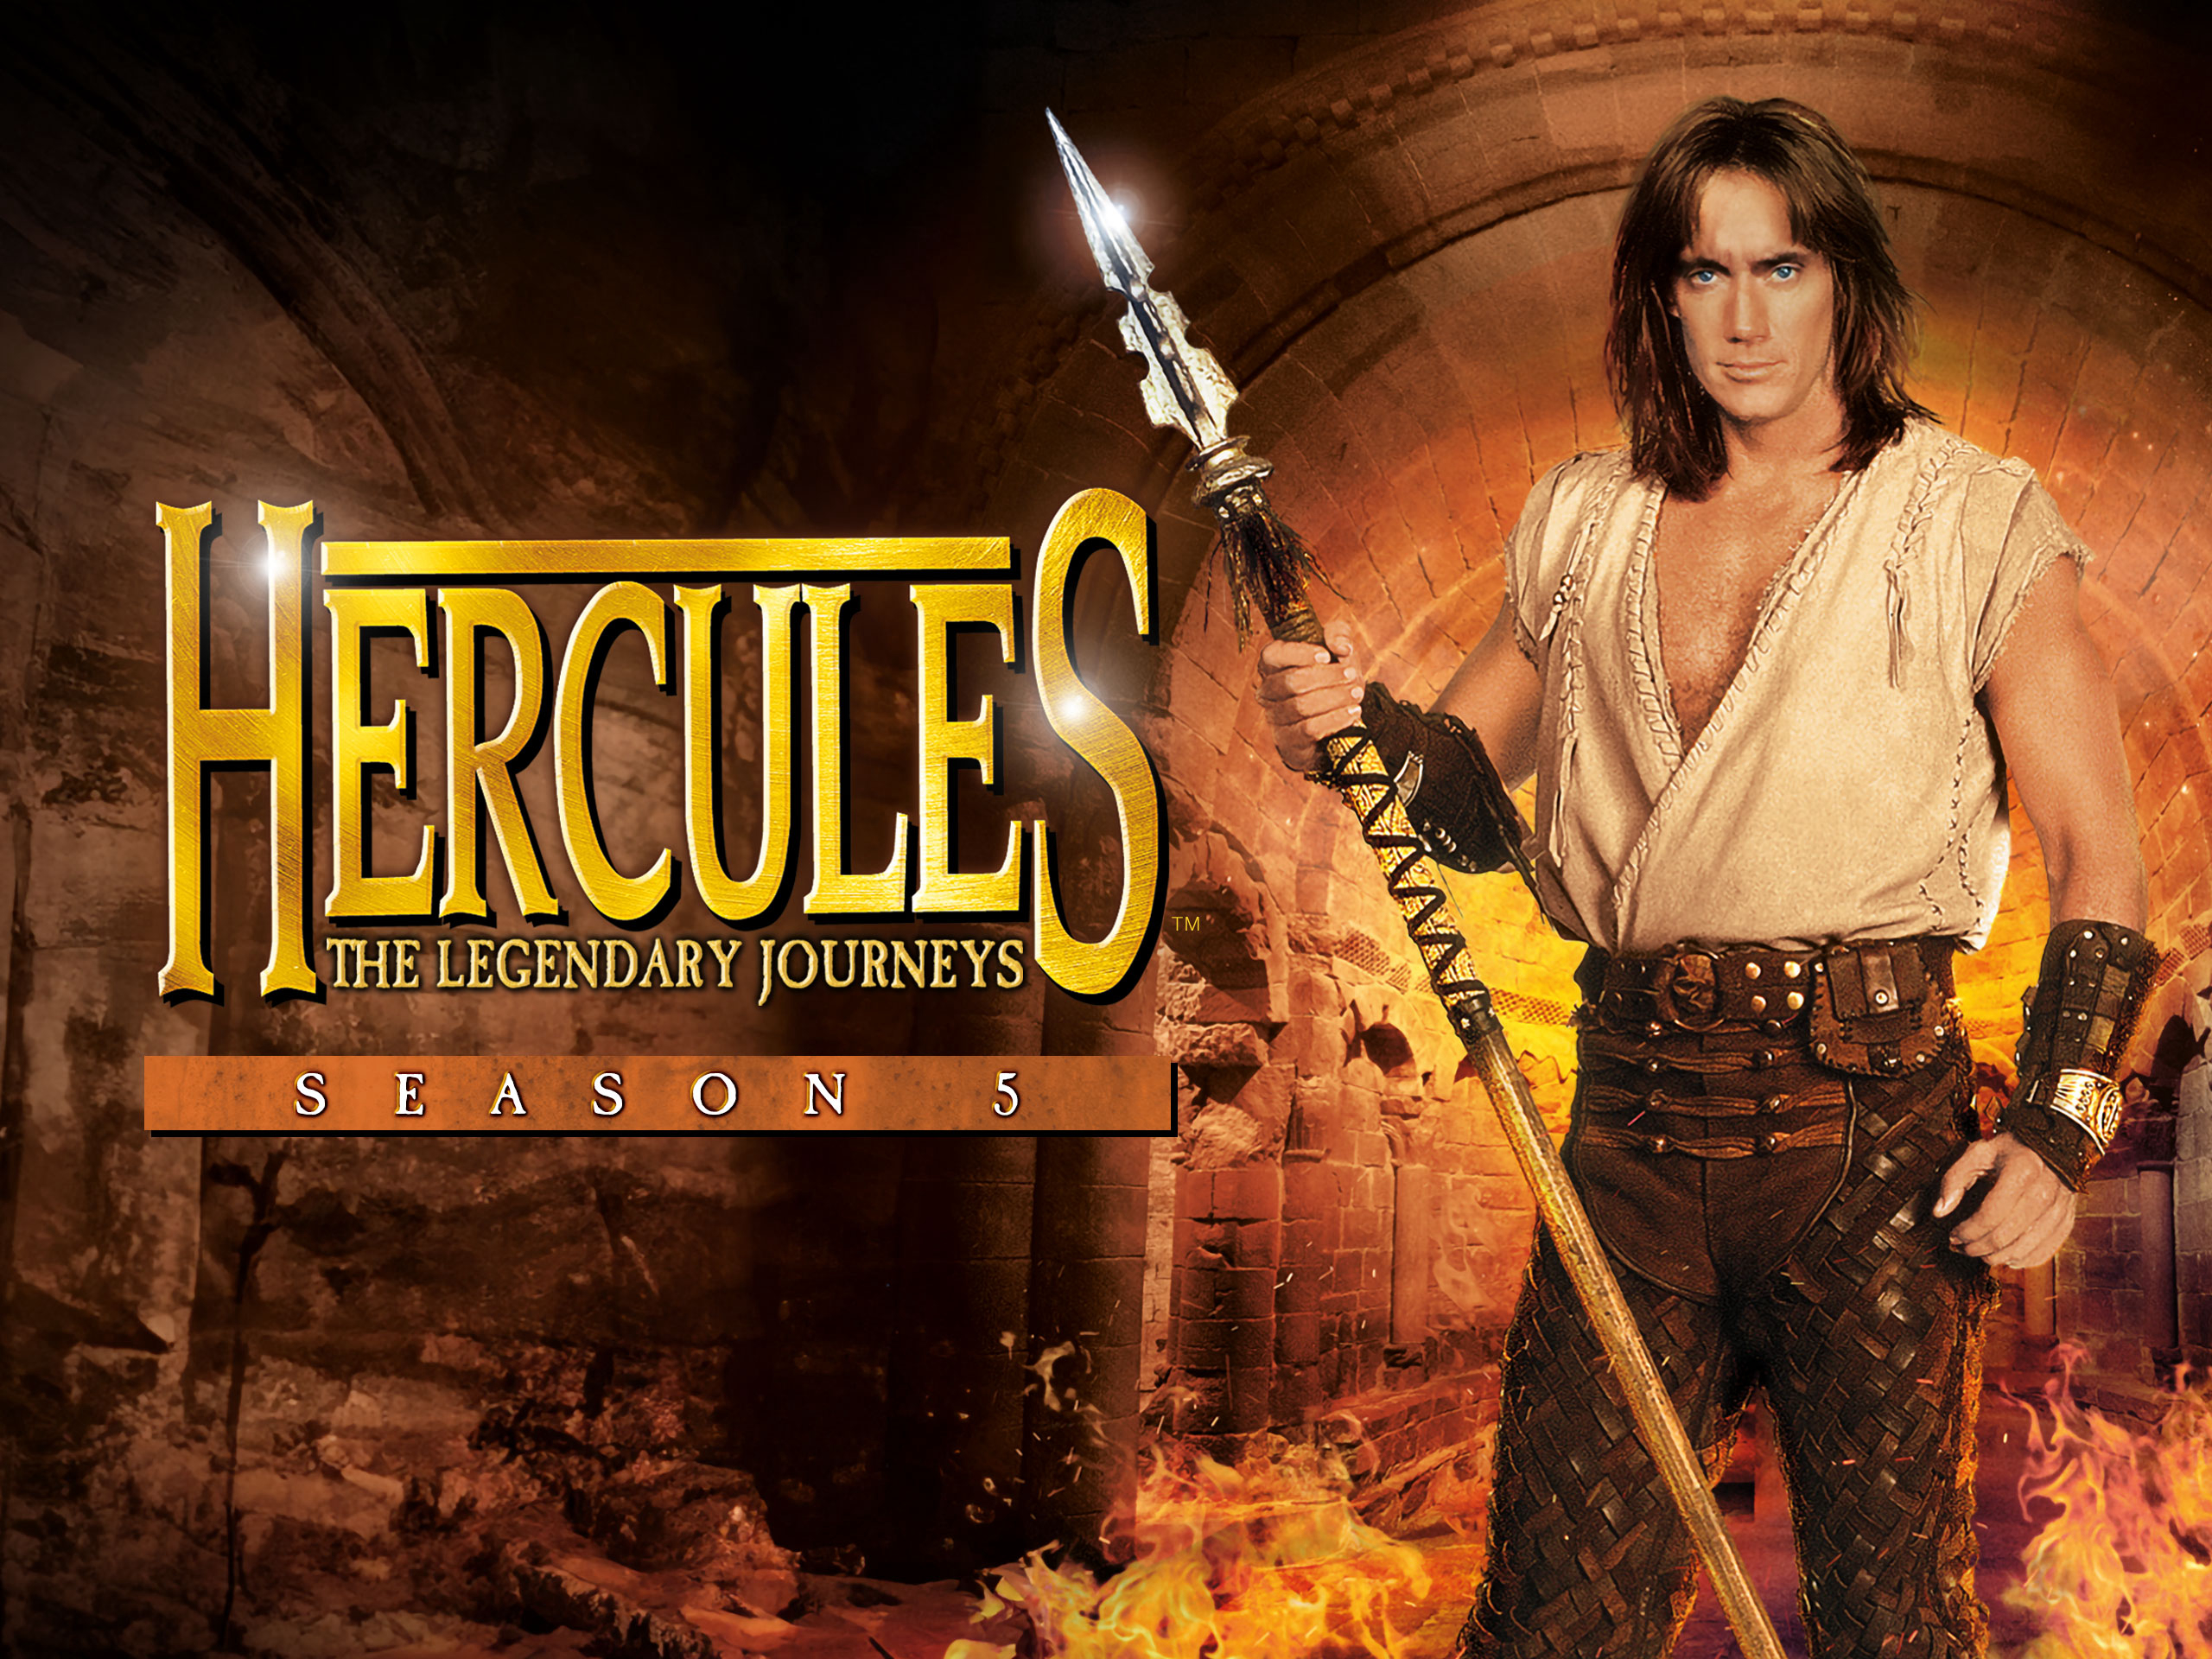 Banner Phim Những Cuộc Phiêu Lưu Của Hercules (Phần 5) (Hercules: The Legendary Journeys (Season 5))